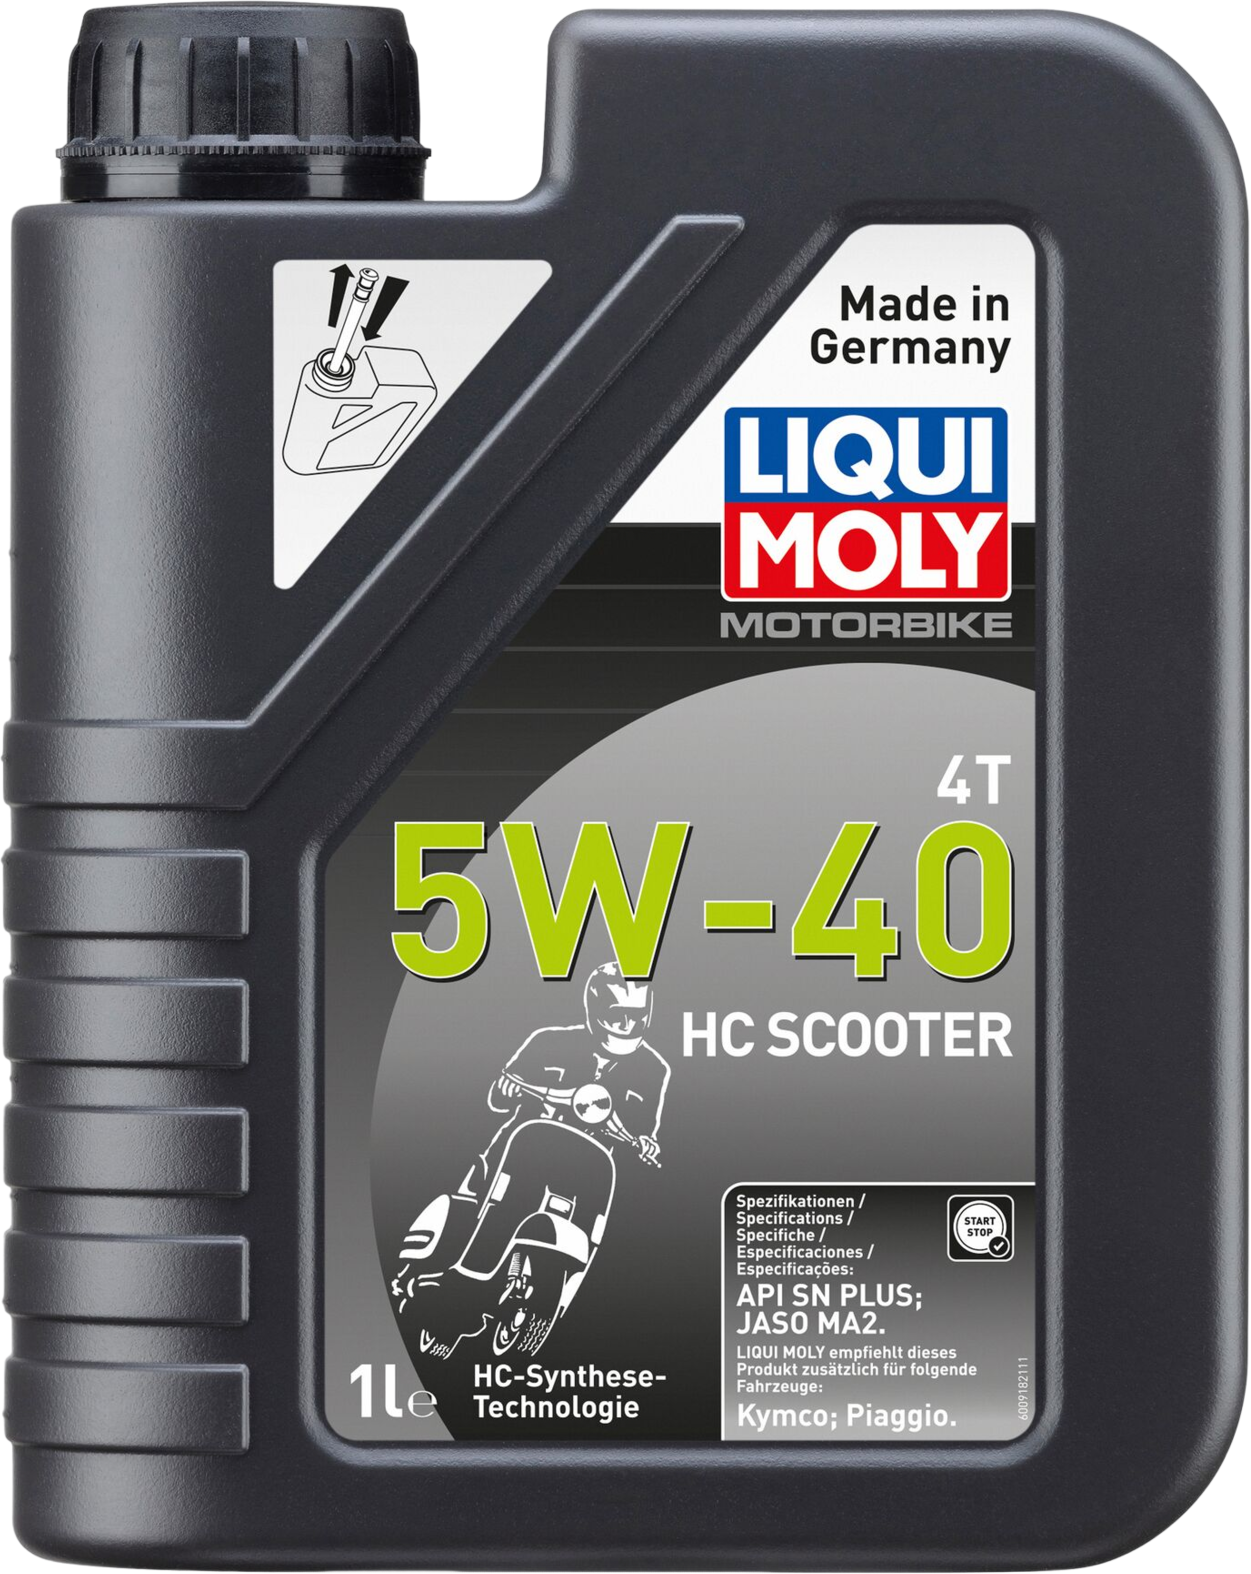 Liqui Moly Motorbike 4T 5W-40 HC Scooter, 6 x 1 lt detail 2